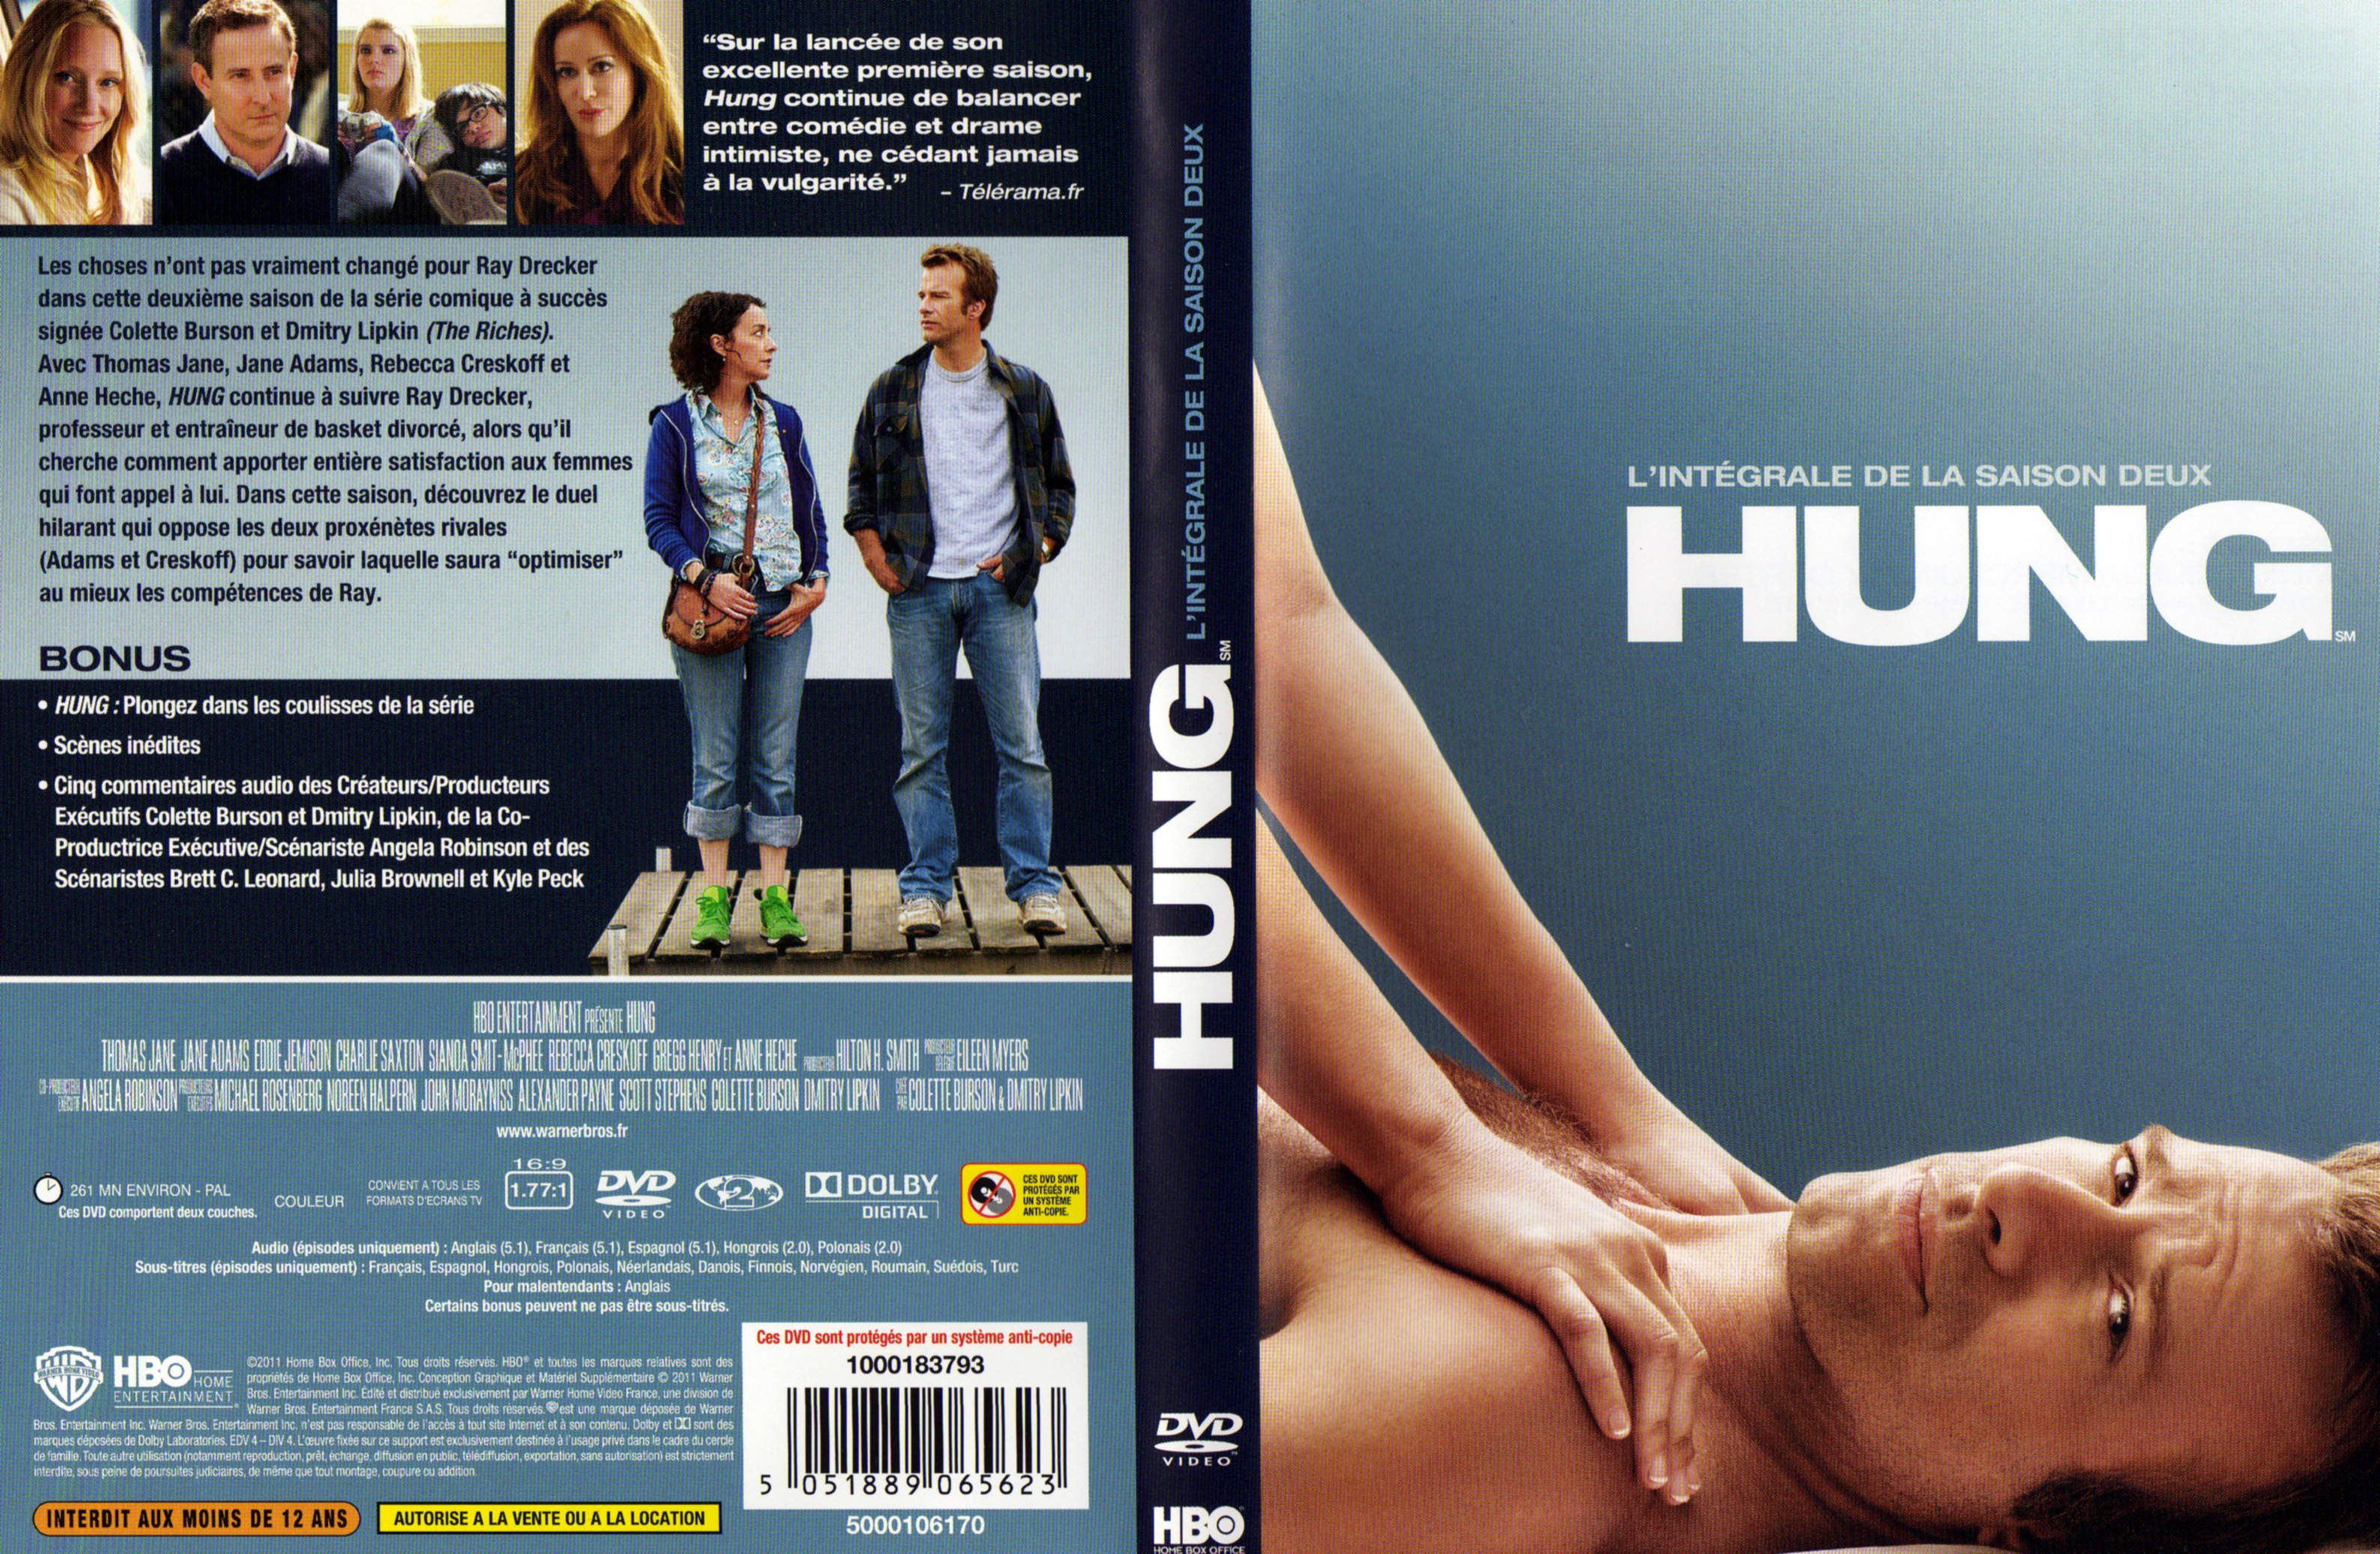 Jaquette DVD Hung Saison 2